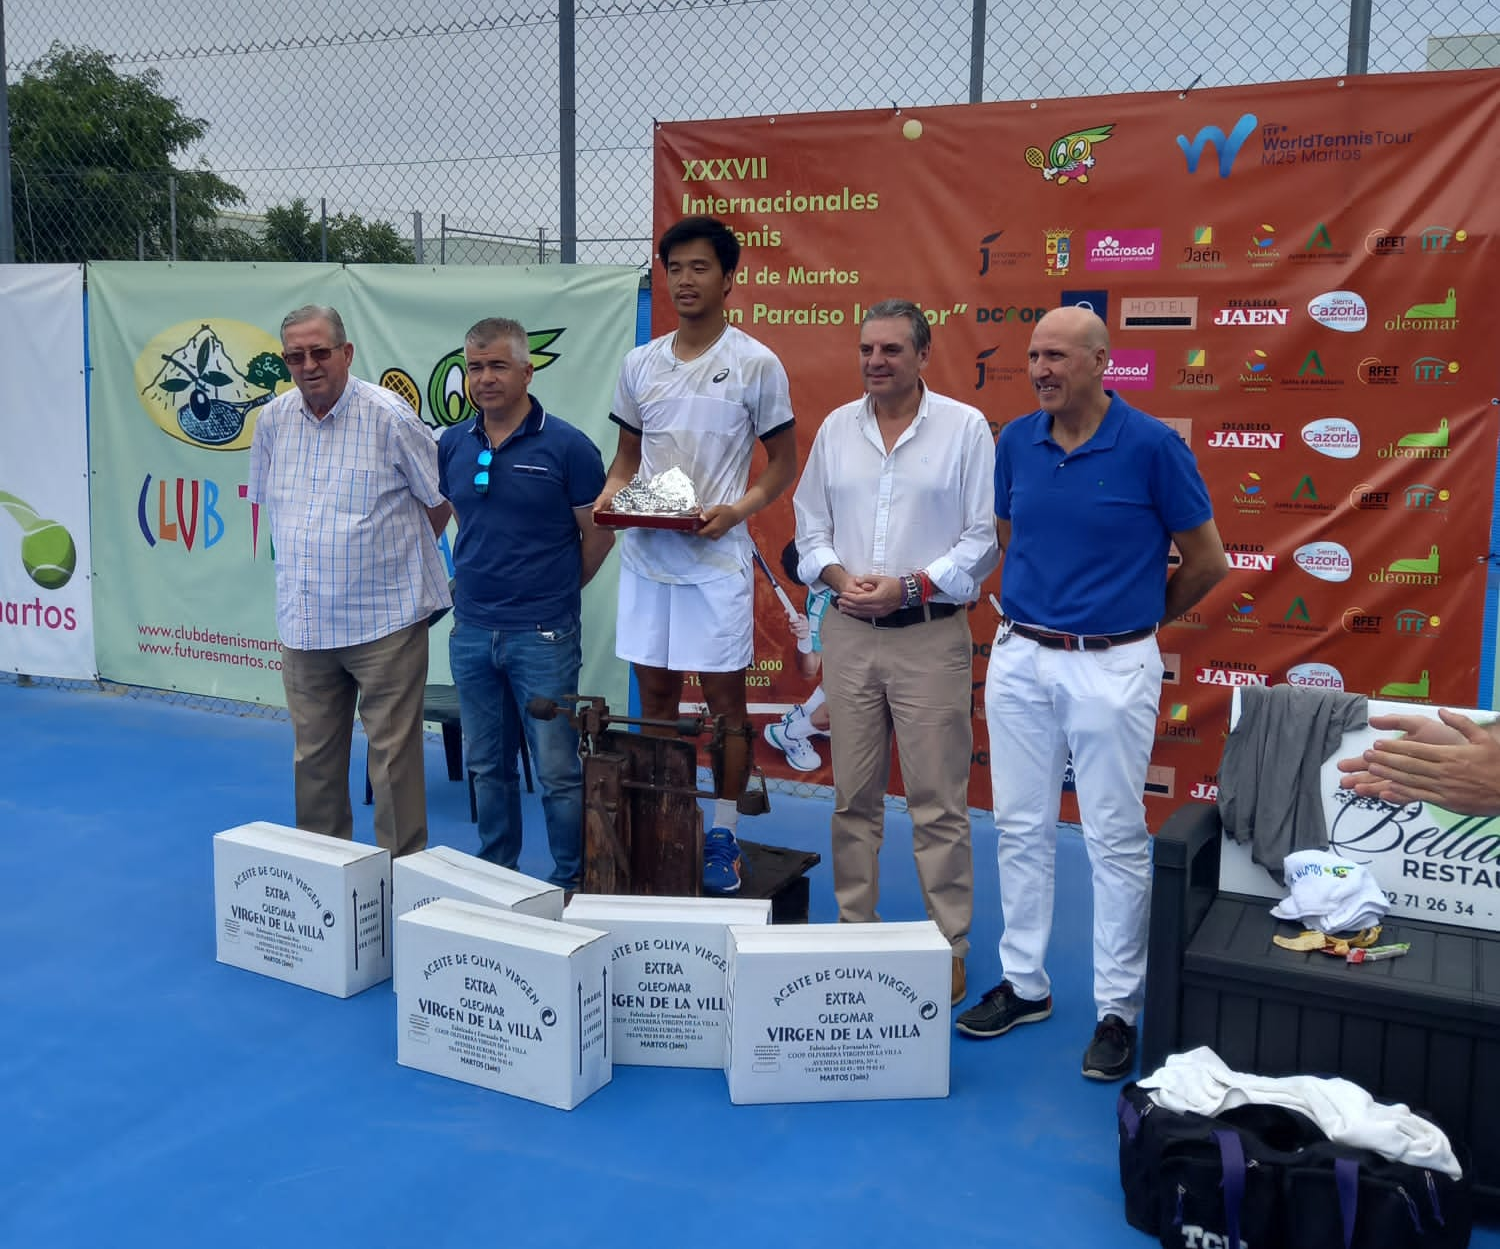 El chino Fajing Sun se coronaba en los Internacionales de Tenis “Ciudad de Martos”